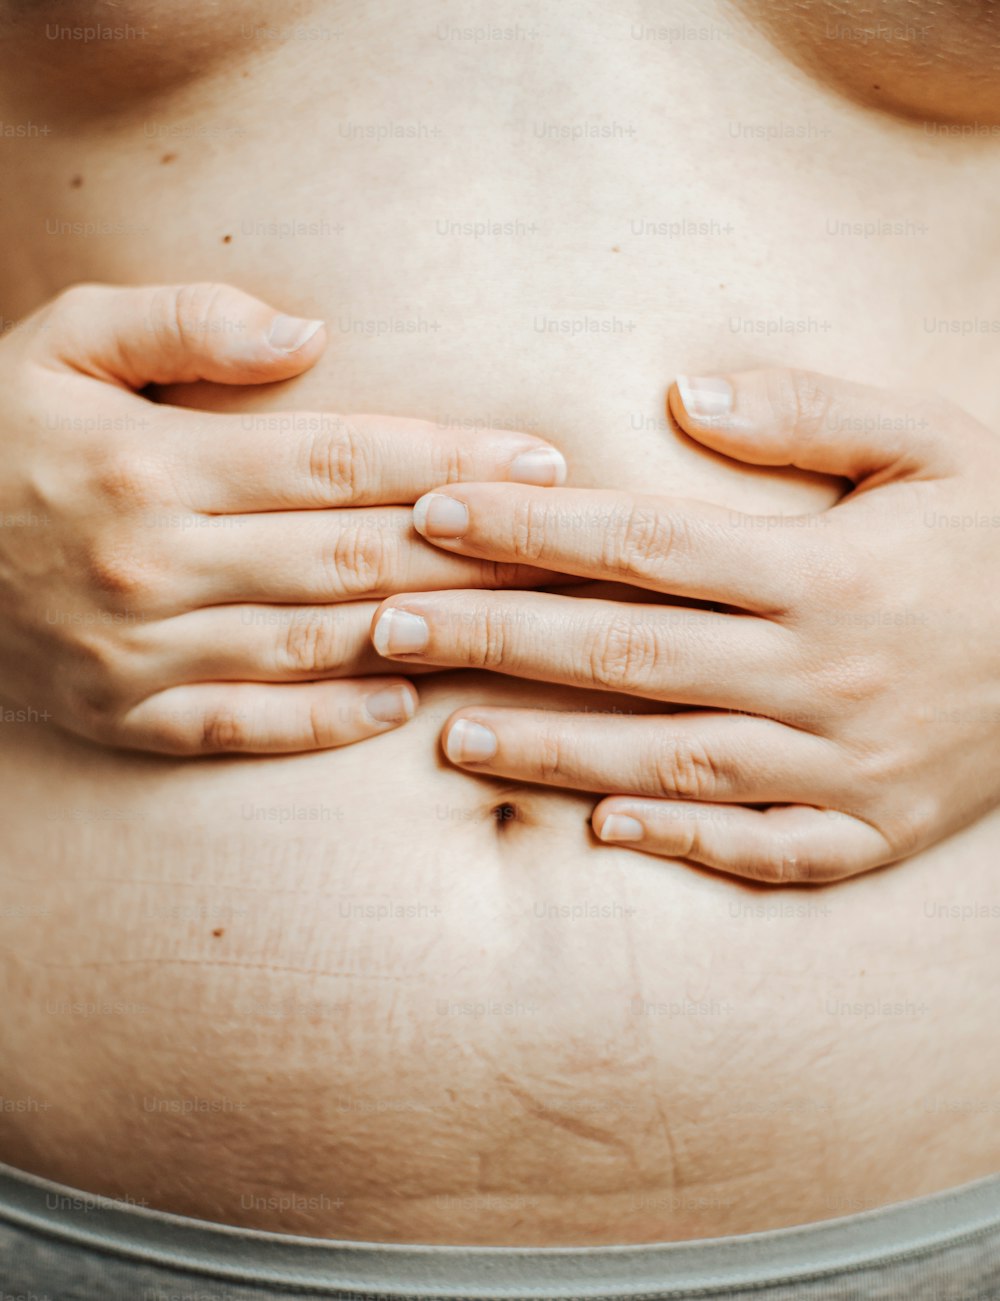 um close up do estômago de uma mulher com as mãos no estômago